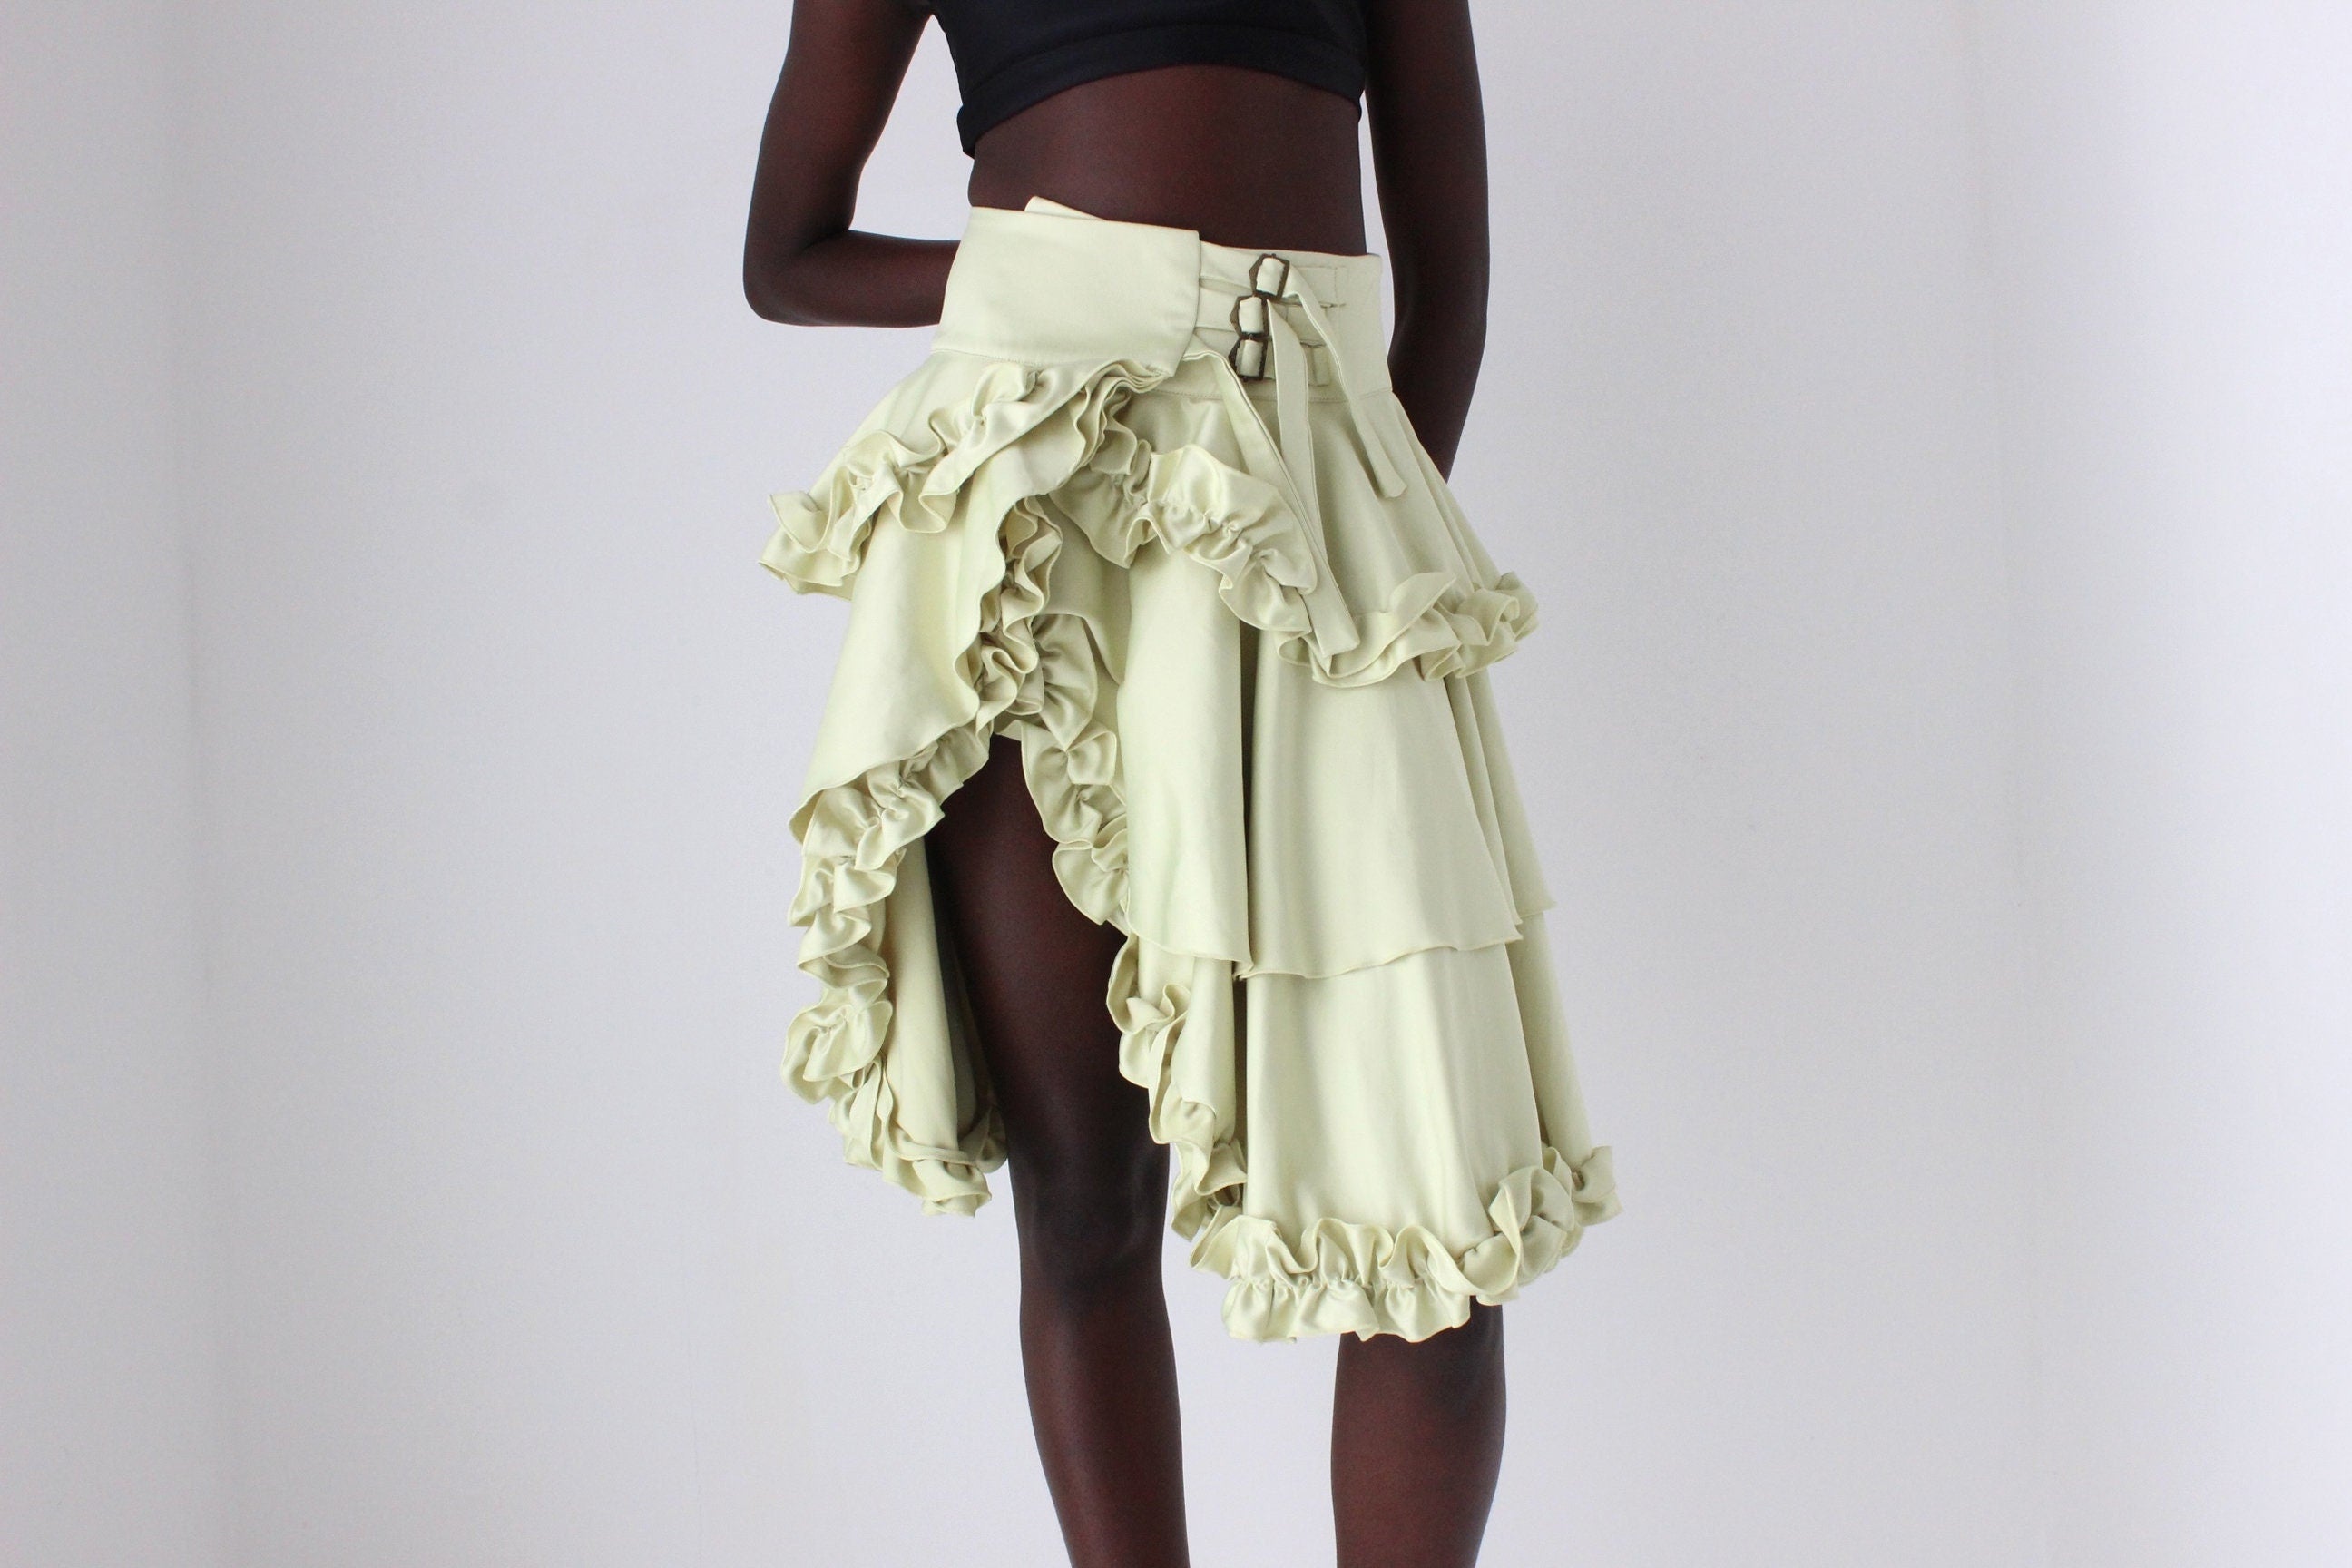 Fabulous 2000s Sculptural Frou Frou Skirt